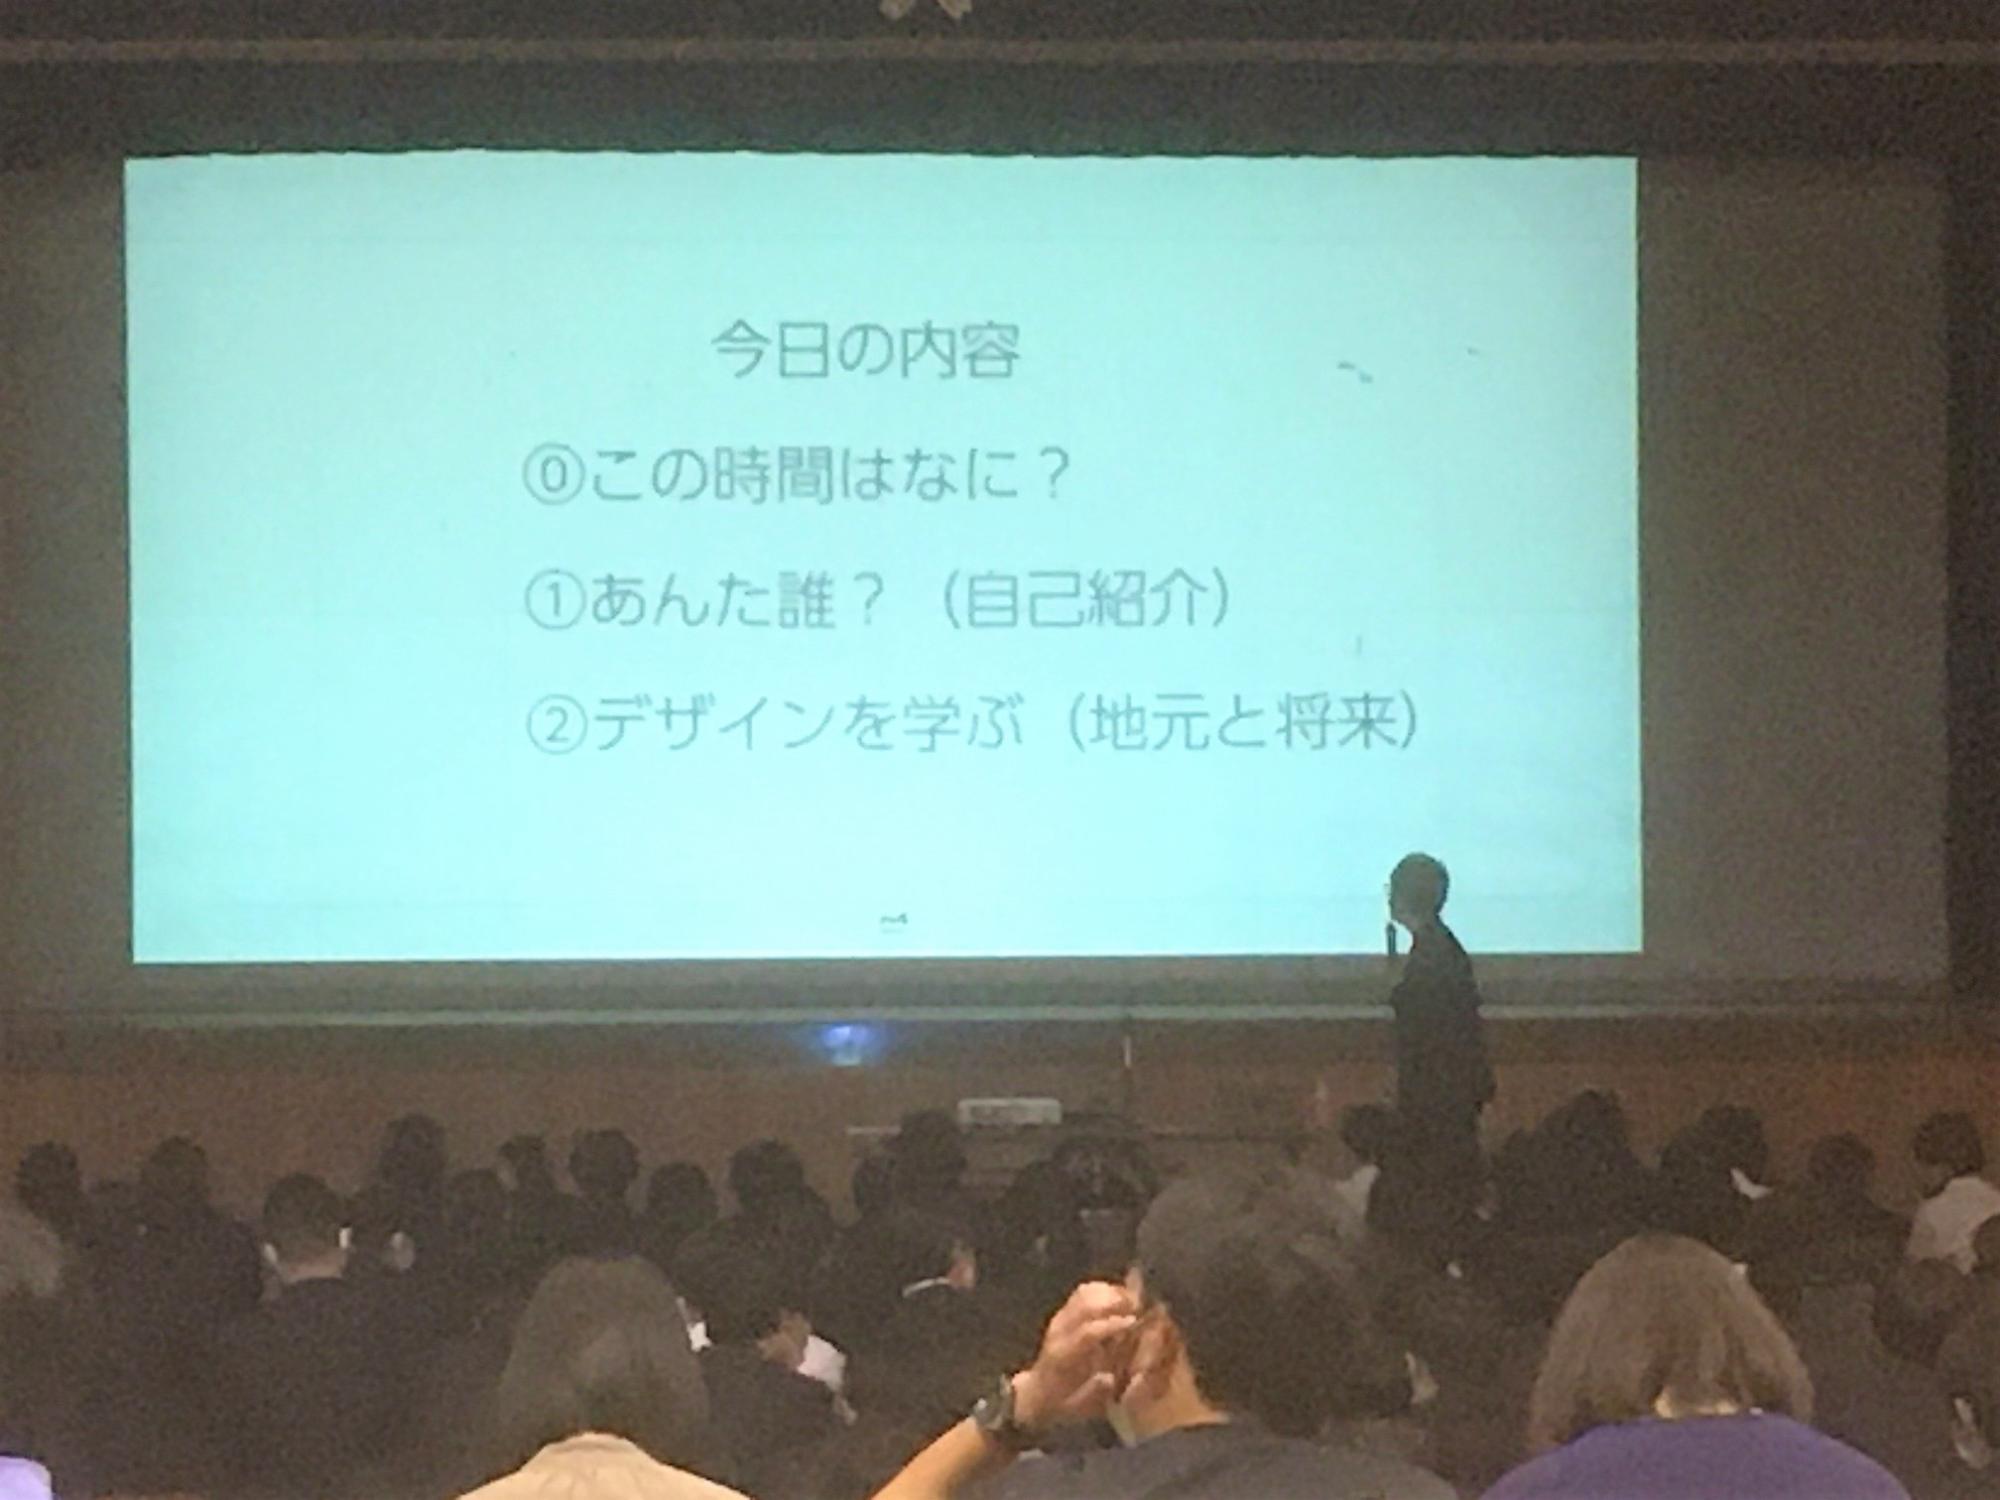 株式会社MGNETの代表取締役である武田修美氏が講演を行っているところ。スライドは今日の内容、1番今日のこの時間なにかの説明、2番は講師の自己紹介、3番はデザインを学ぶ